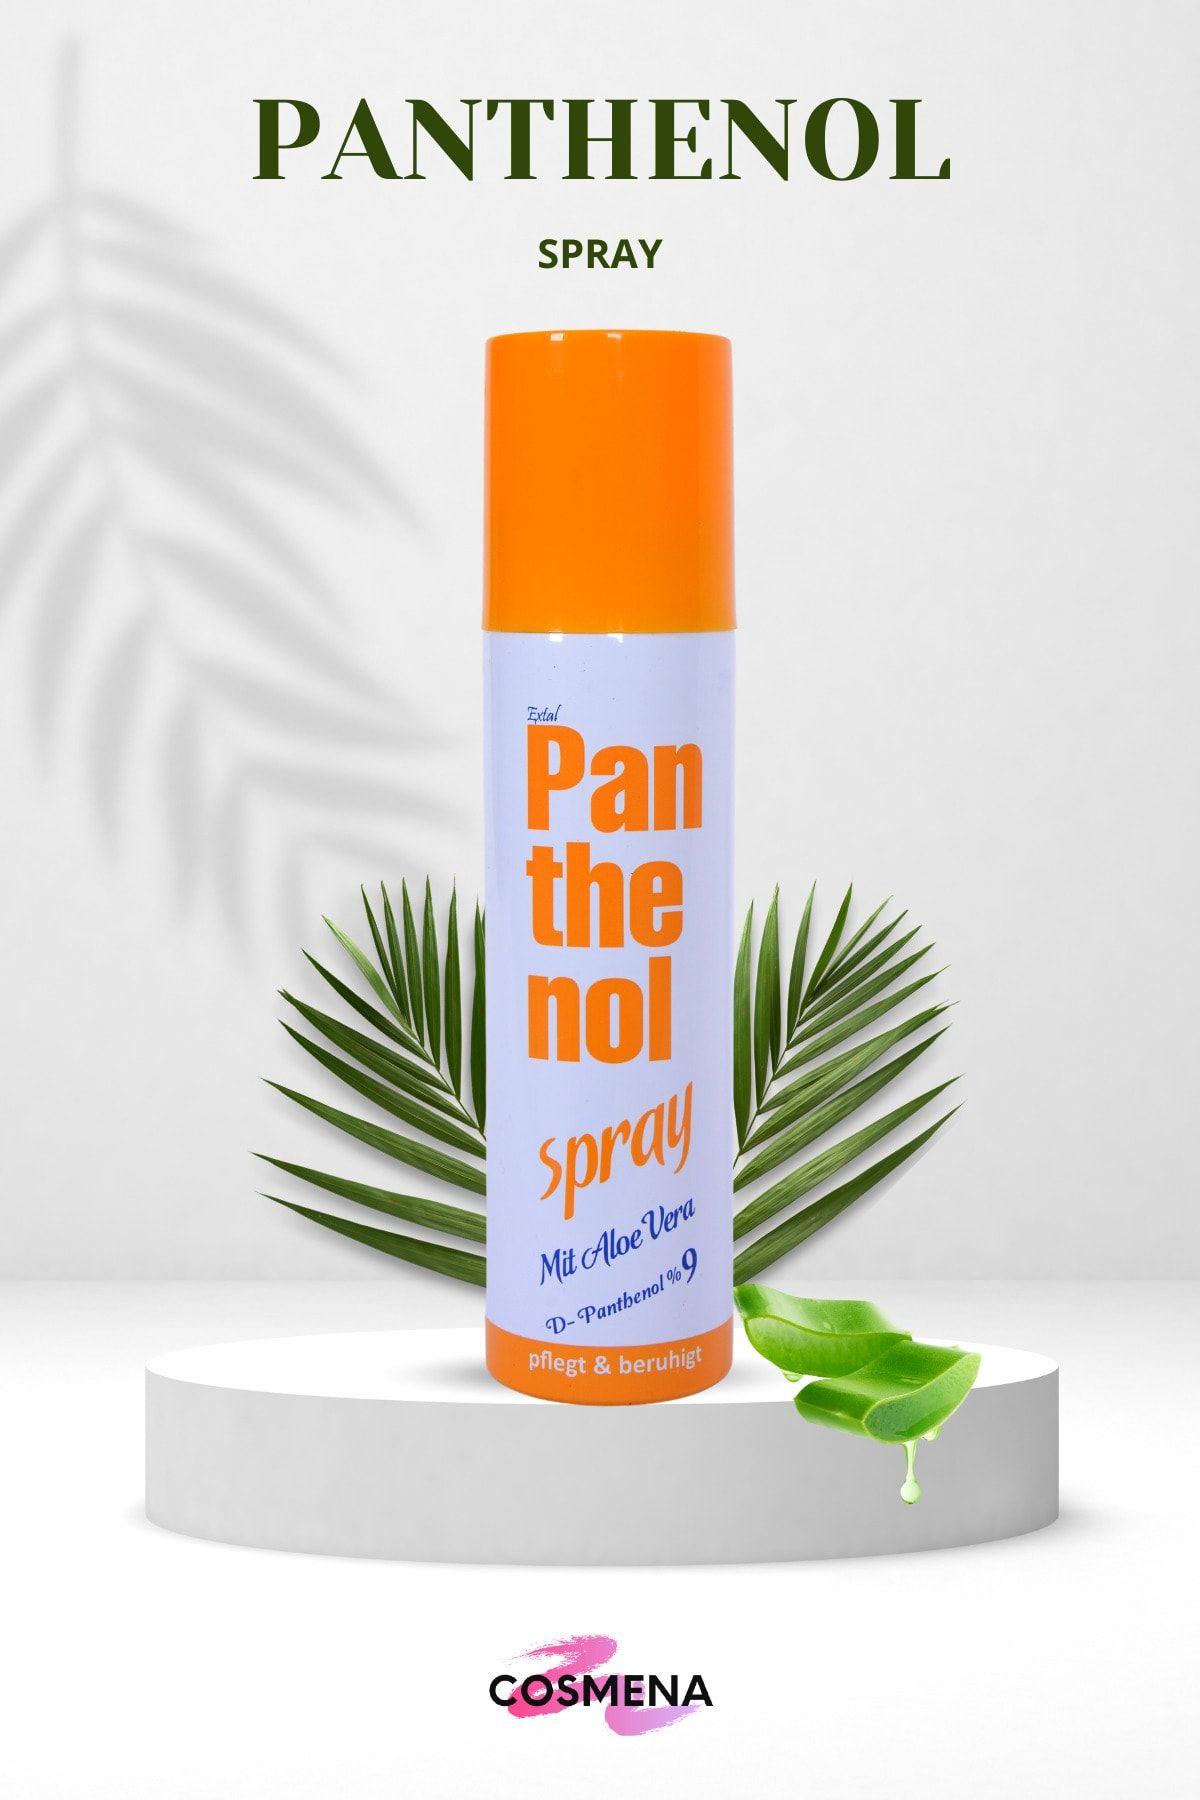 extal Panthenol Spray Mit Aloe Vera Panthenol %9 150 ml